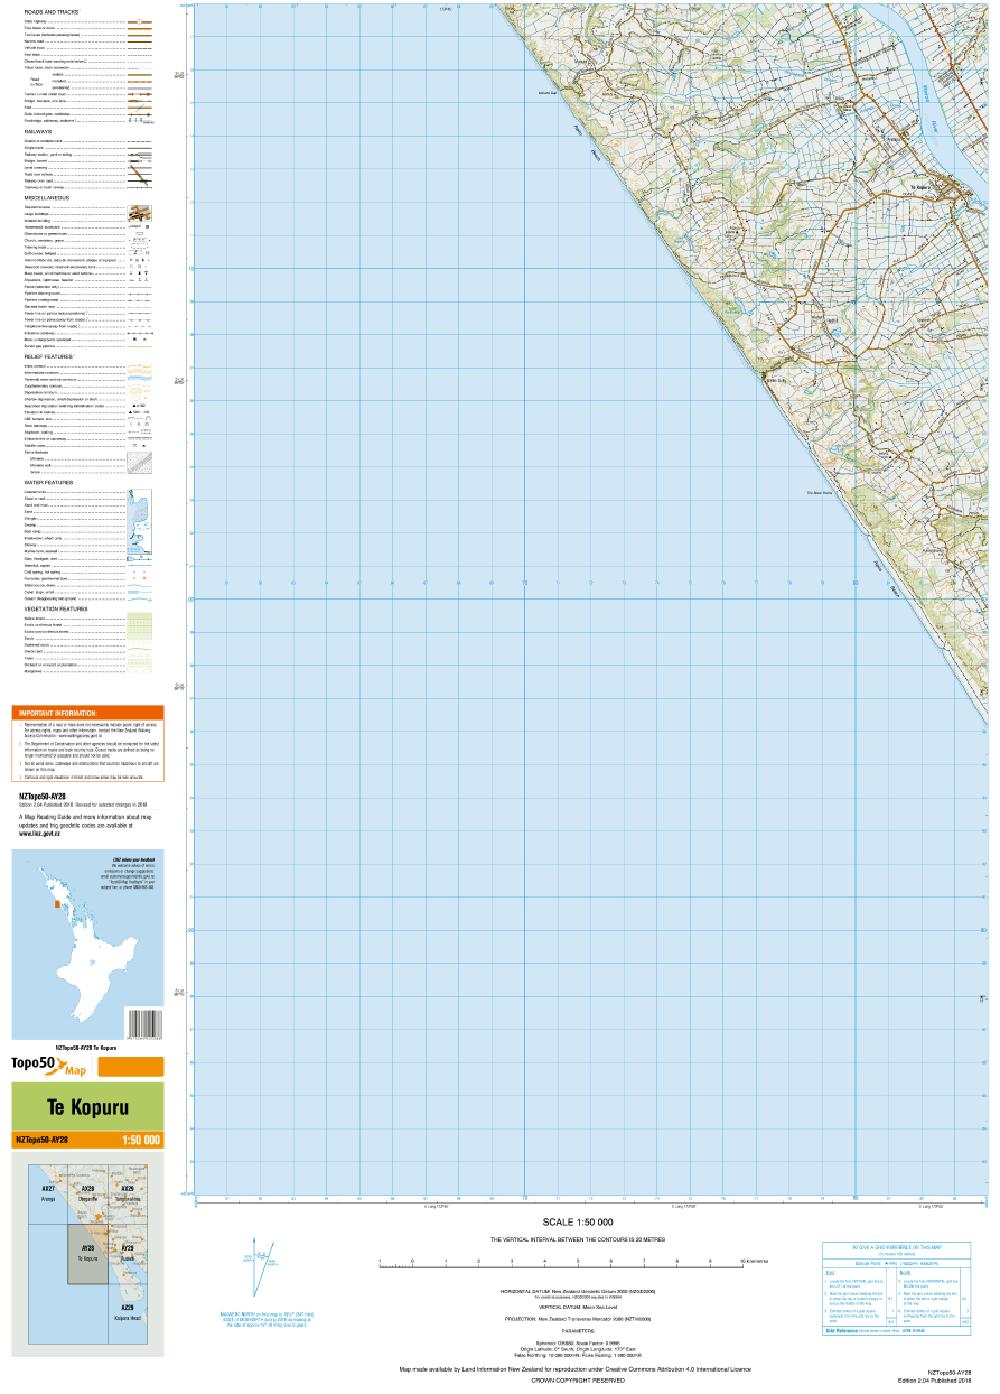 Topo map of Te Kopuru